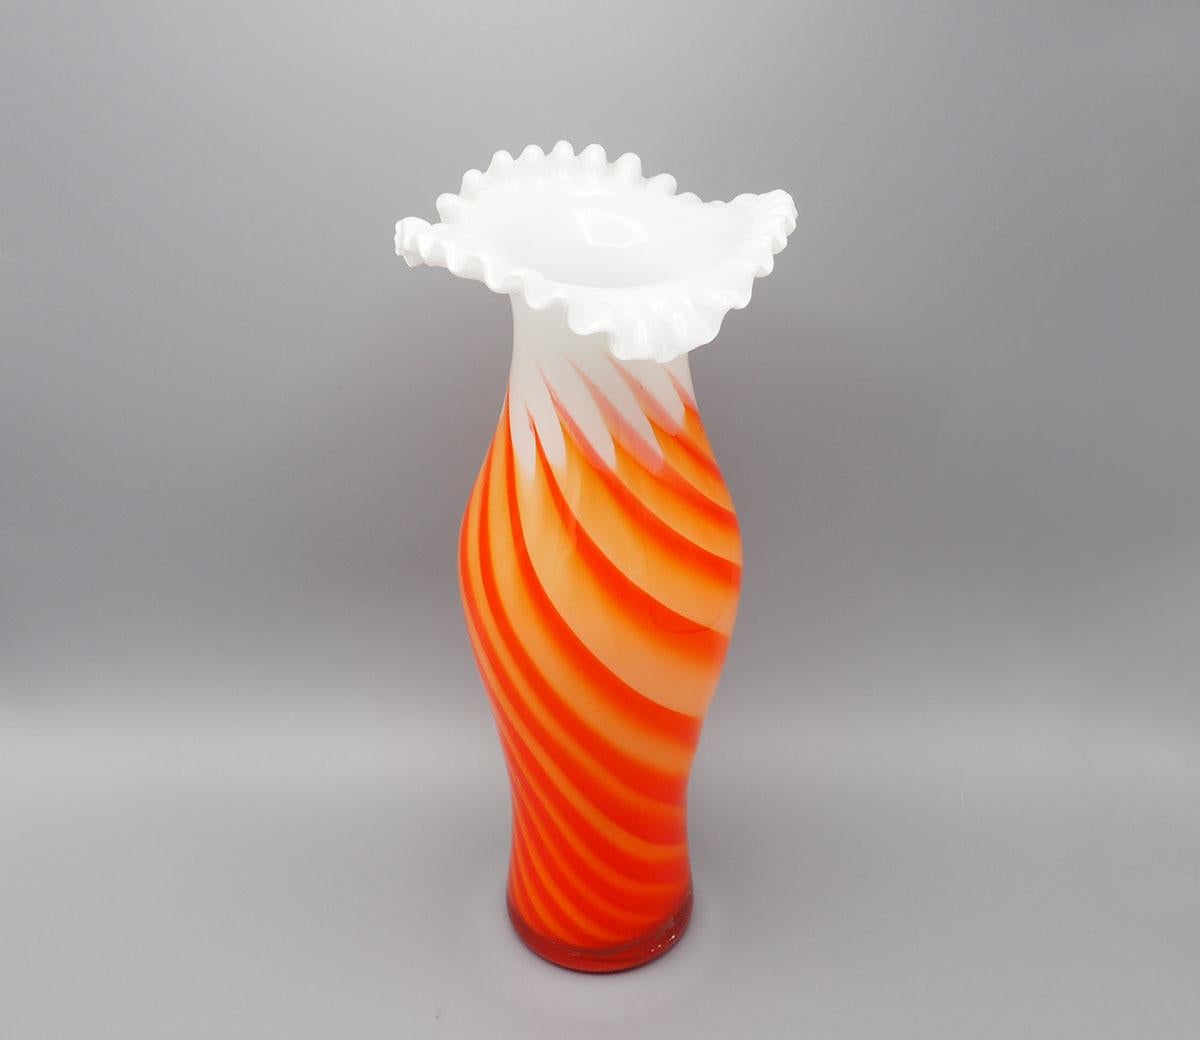 Magnifique vase en verre vintage des années 60/70 fait à la main par Opaline Florence Italie.

Le vase est composé de verre blanc et de verre orange torsadé.

Le haut s'évase avec un bord ondulé.

Attire tous les regards dans votre intérieur,